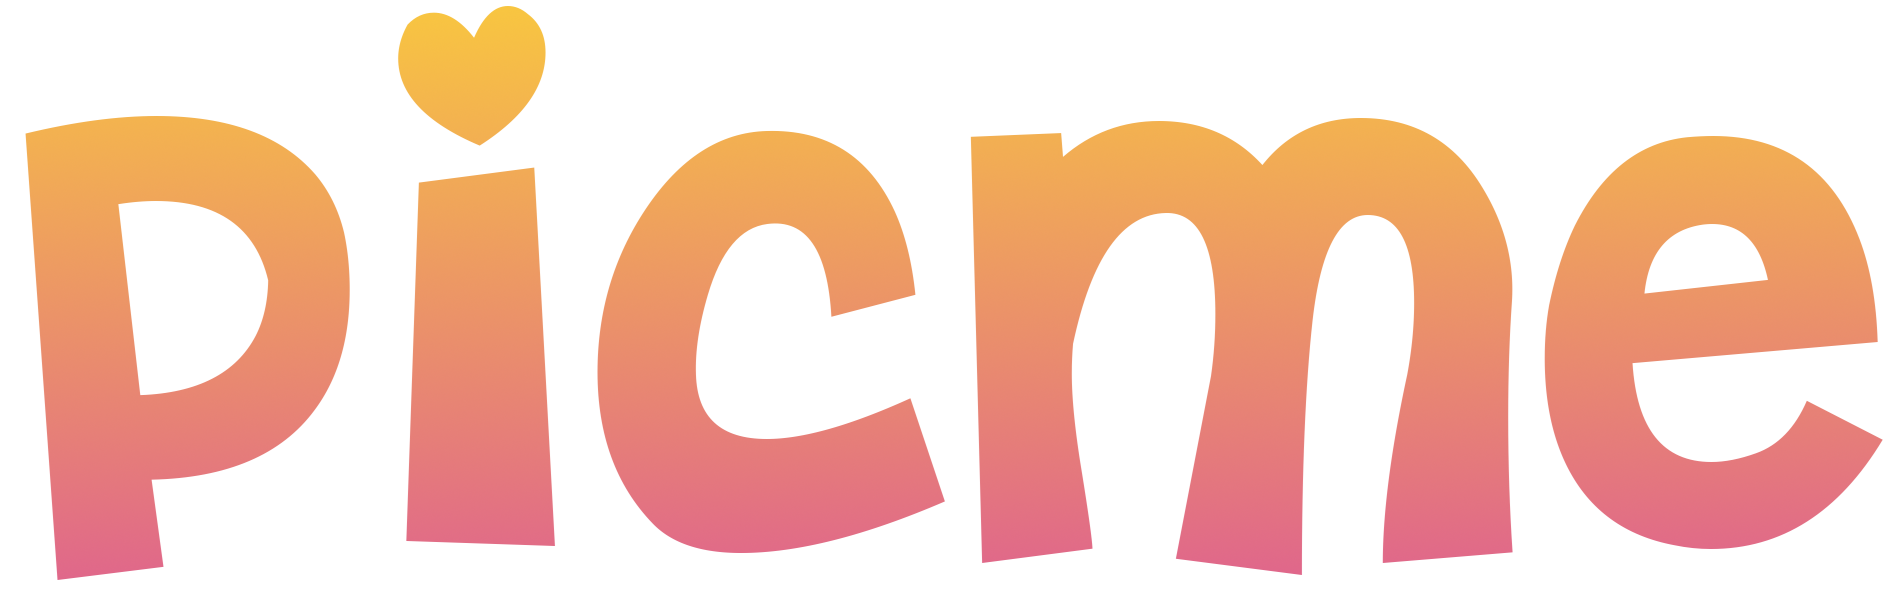 PicMe Logo